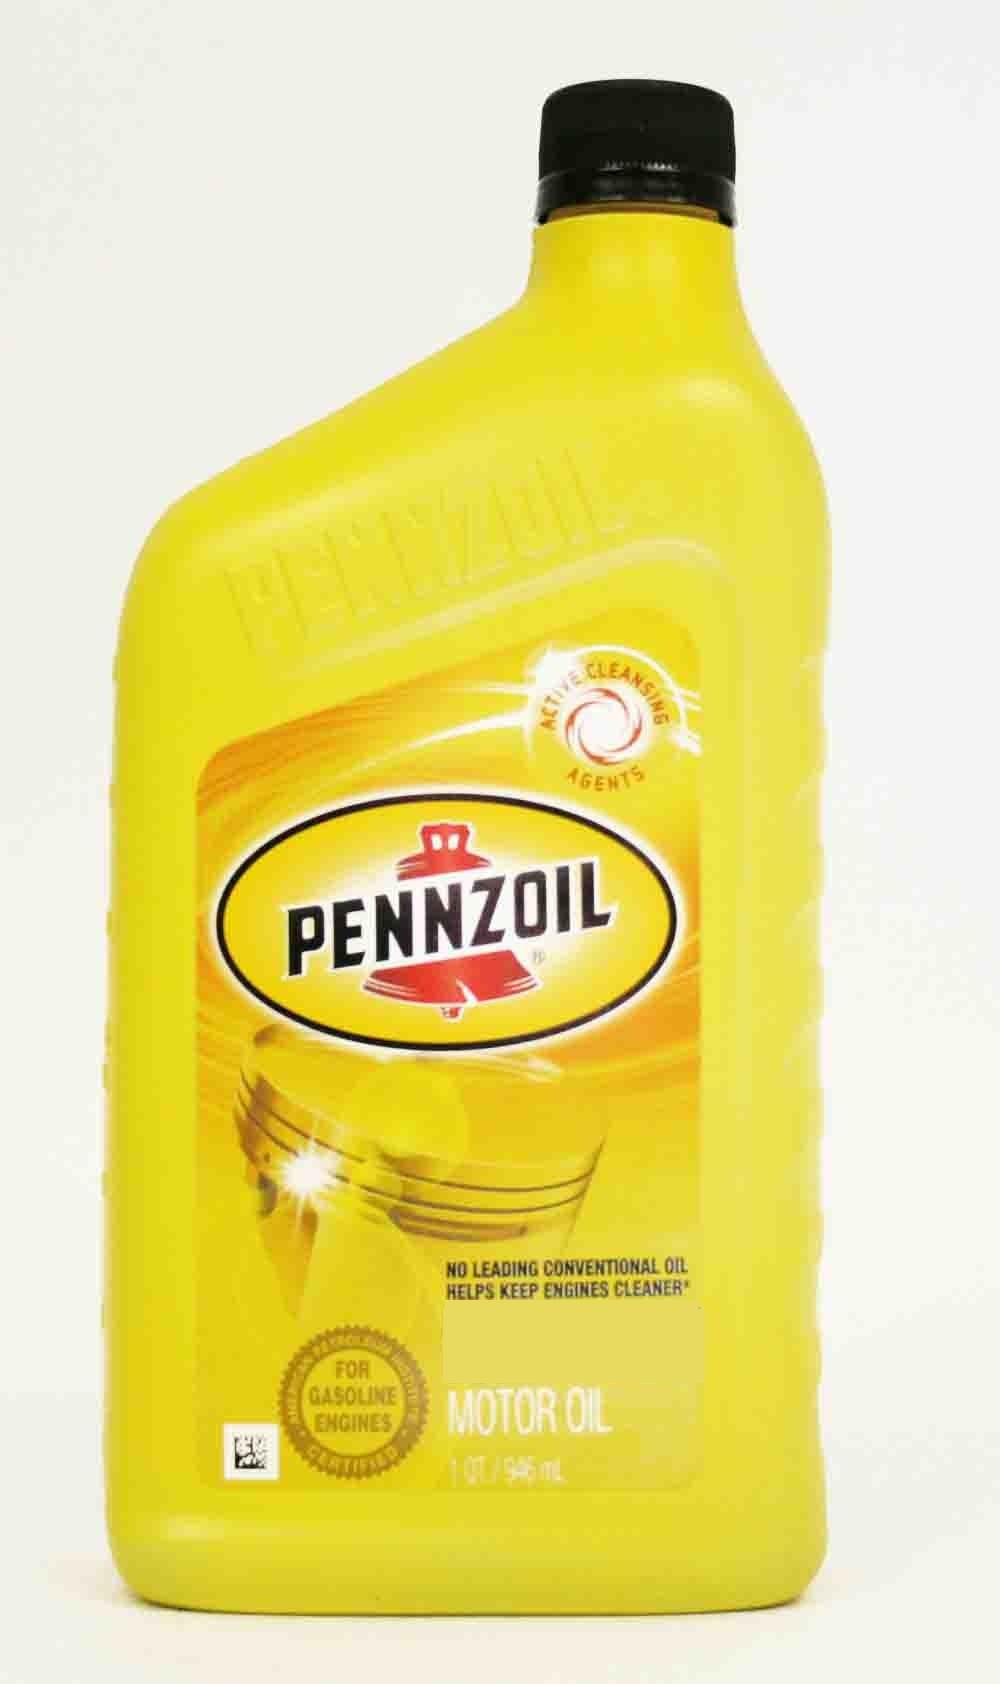 Pennzoil 5W30 Motor Oil Quart